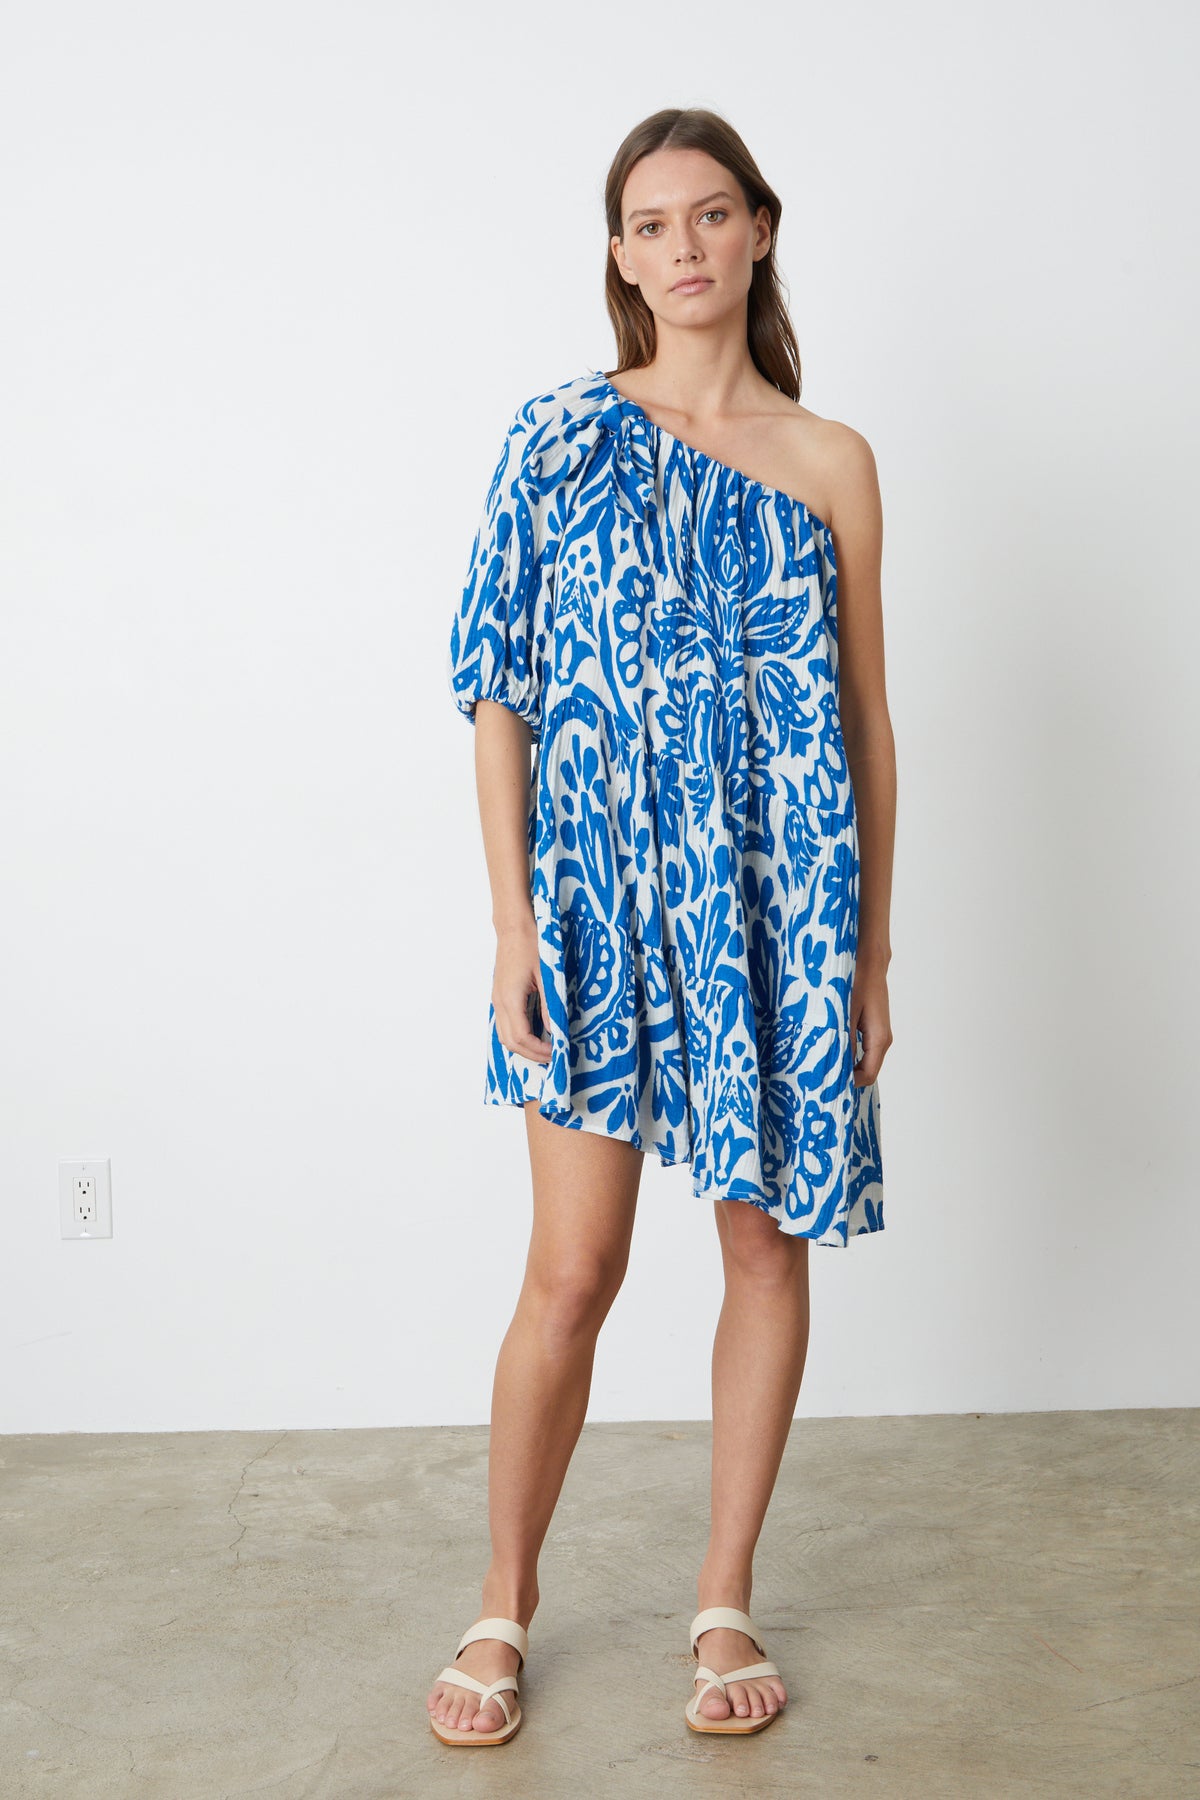 A model wearing the Velvet by Graham & Spencer Gretchen Printed One Shoulder Dress.-26774928261313